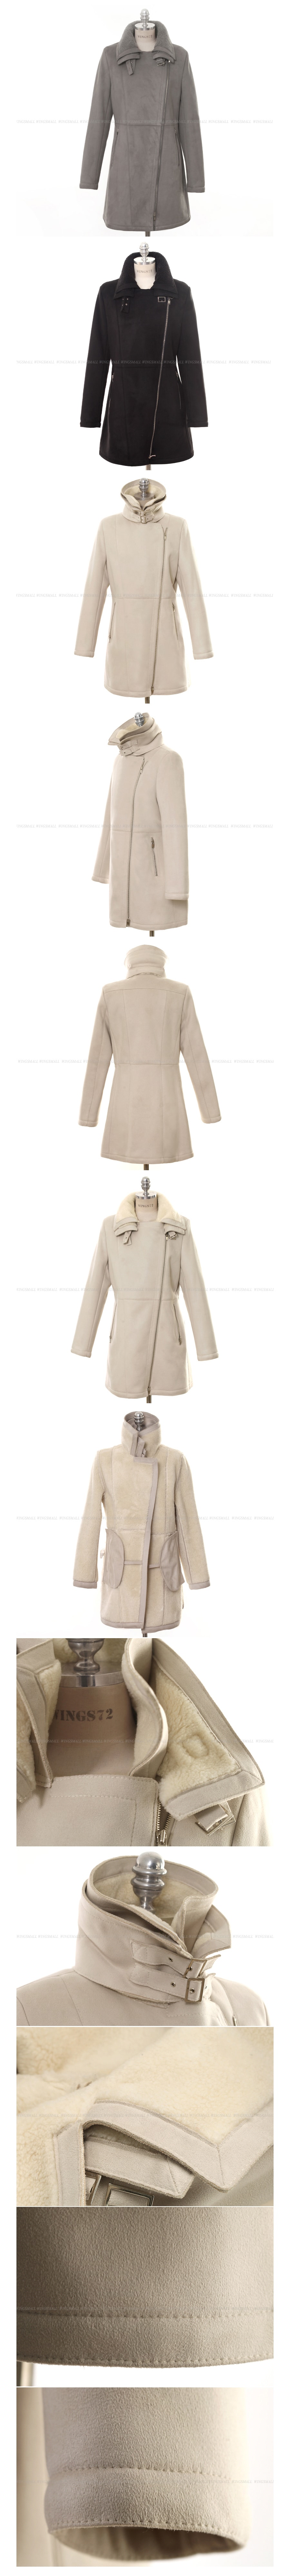 KOREA Double Collar Faux Shearling Coat Grey (S-Size) [Free Shipping]